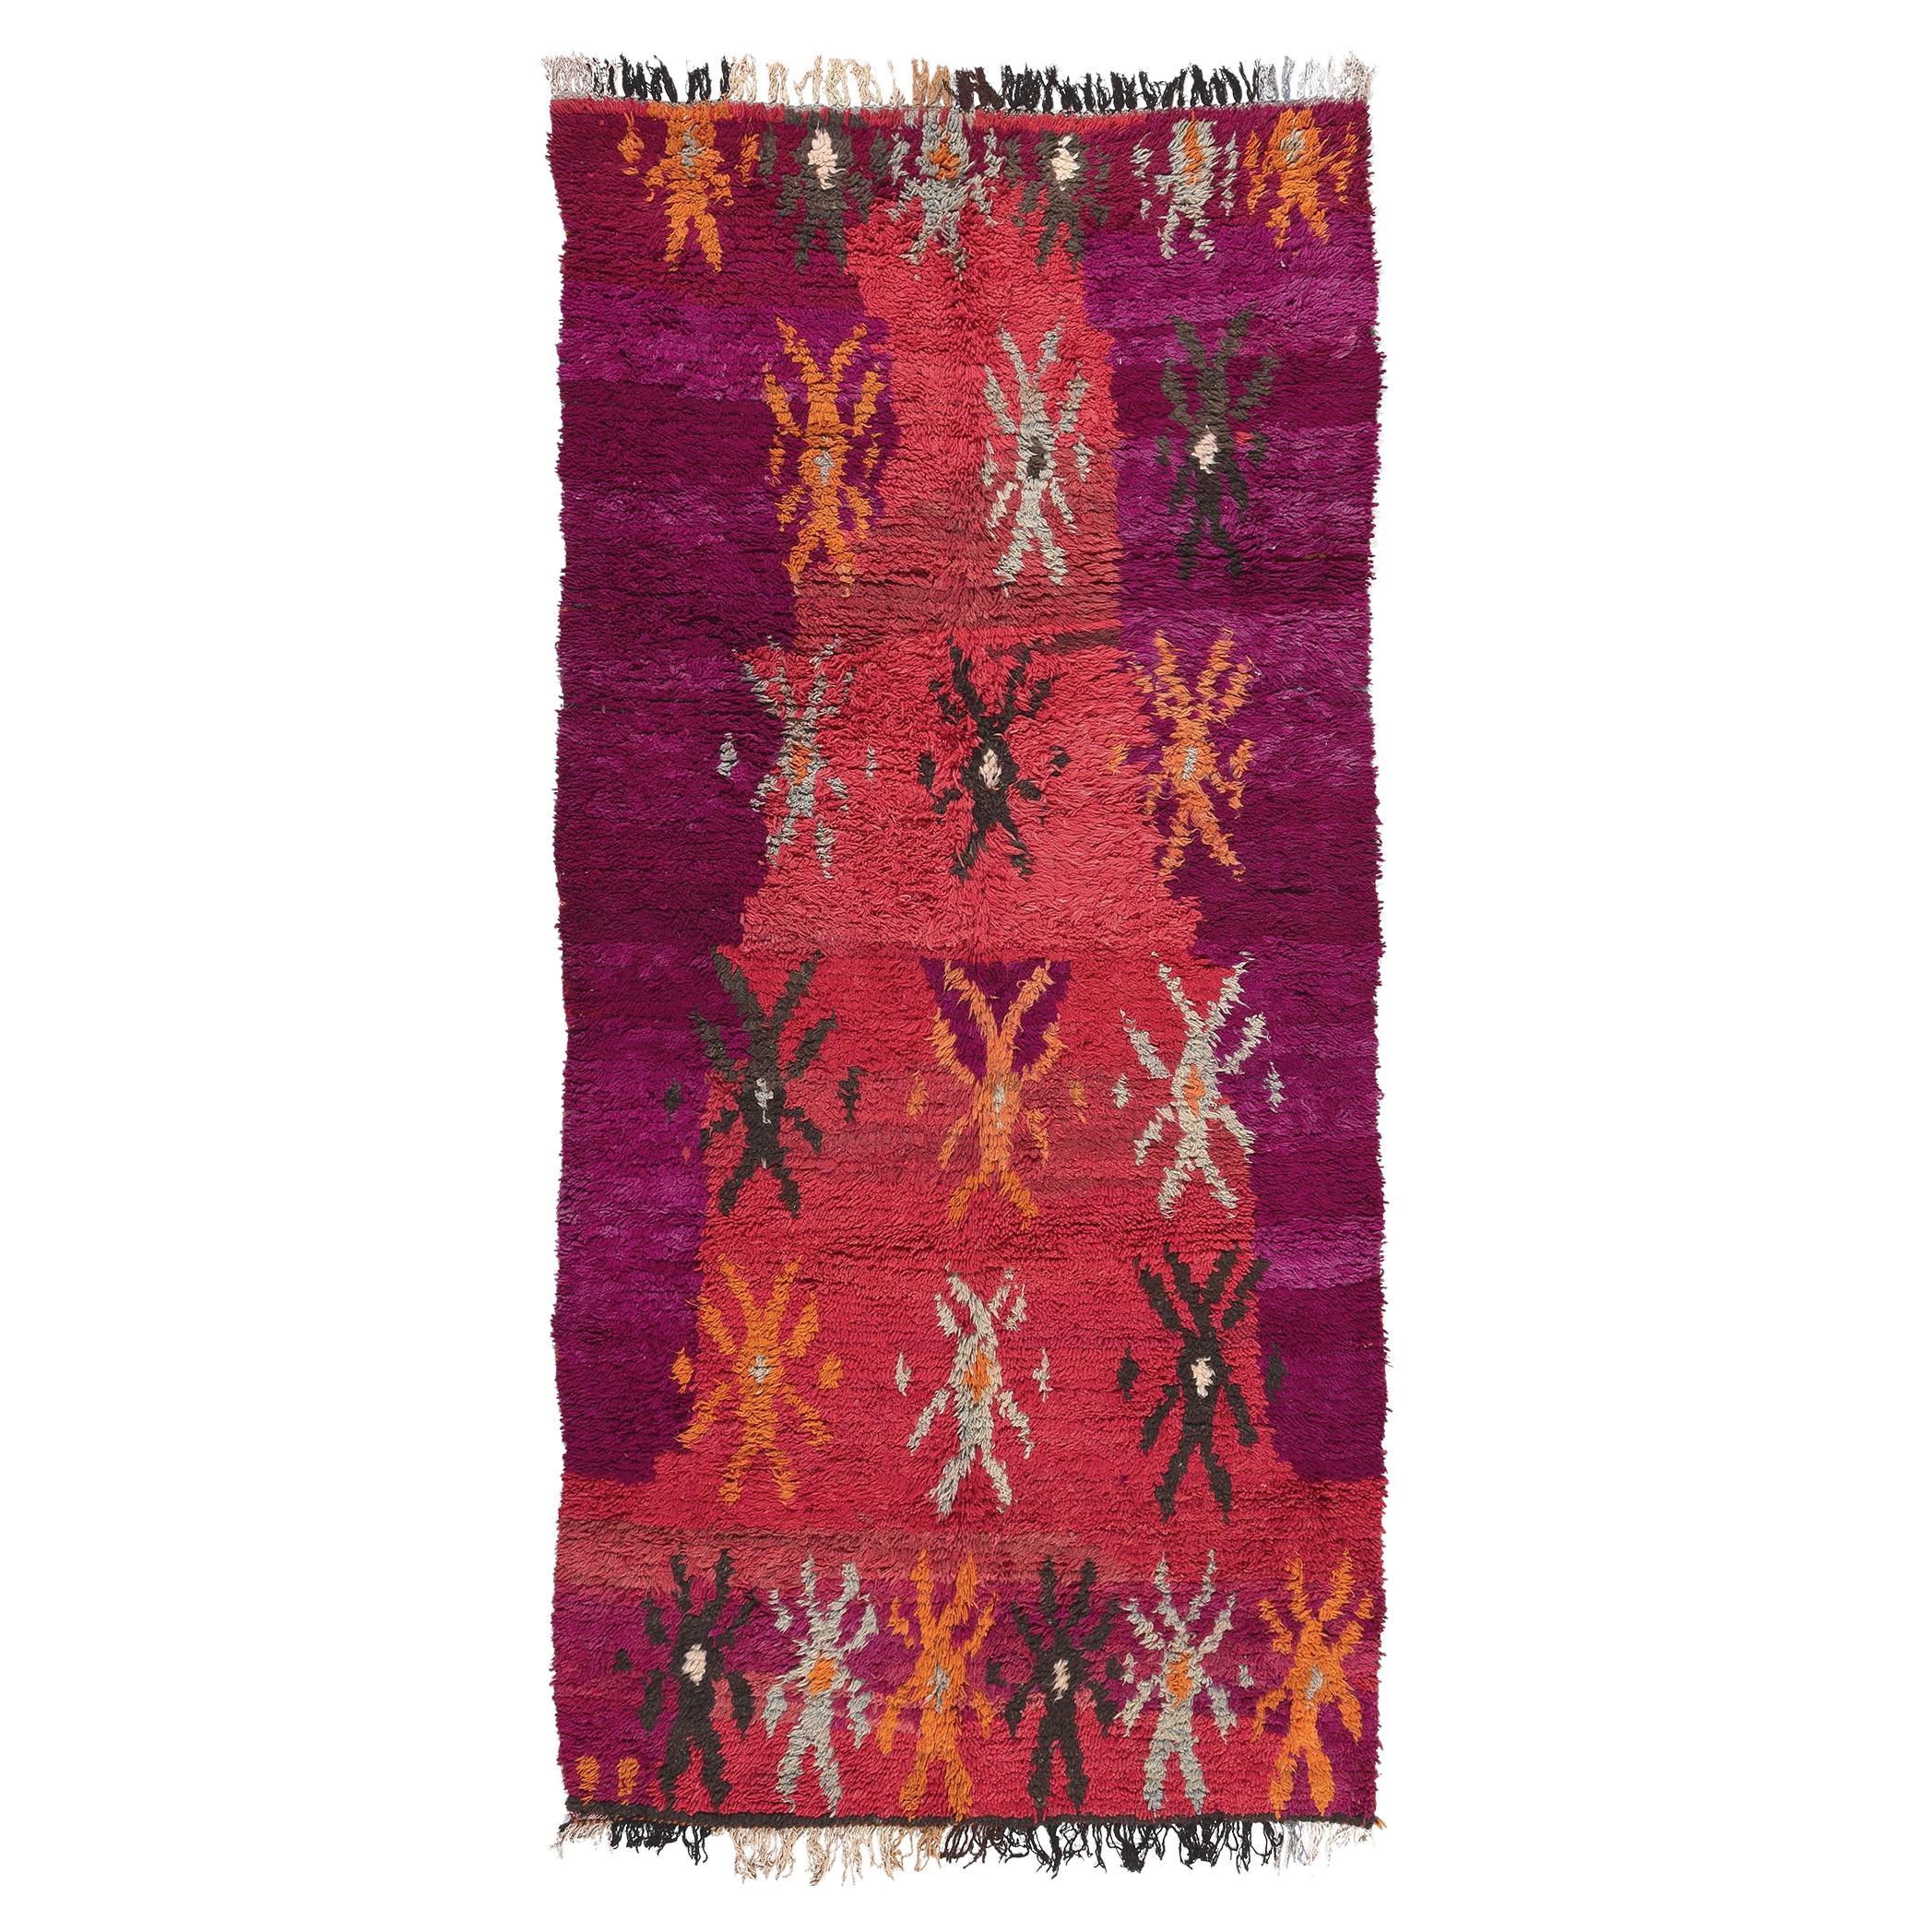 Marokkanischer Talsint-Teppich im Vintage-Stil, Stammeskunst-Enchantment trifft Maximalistischen Stil